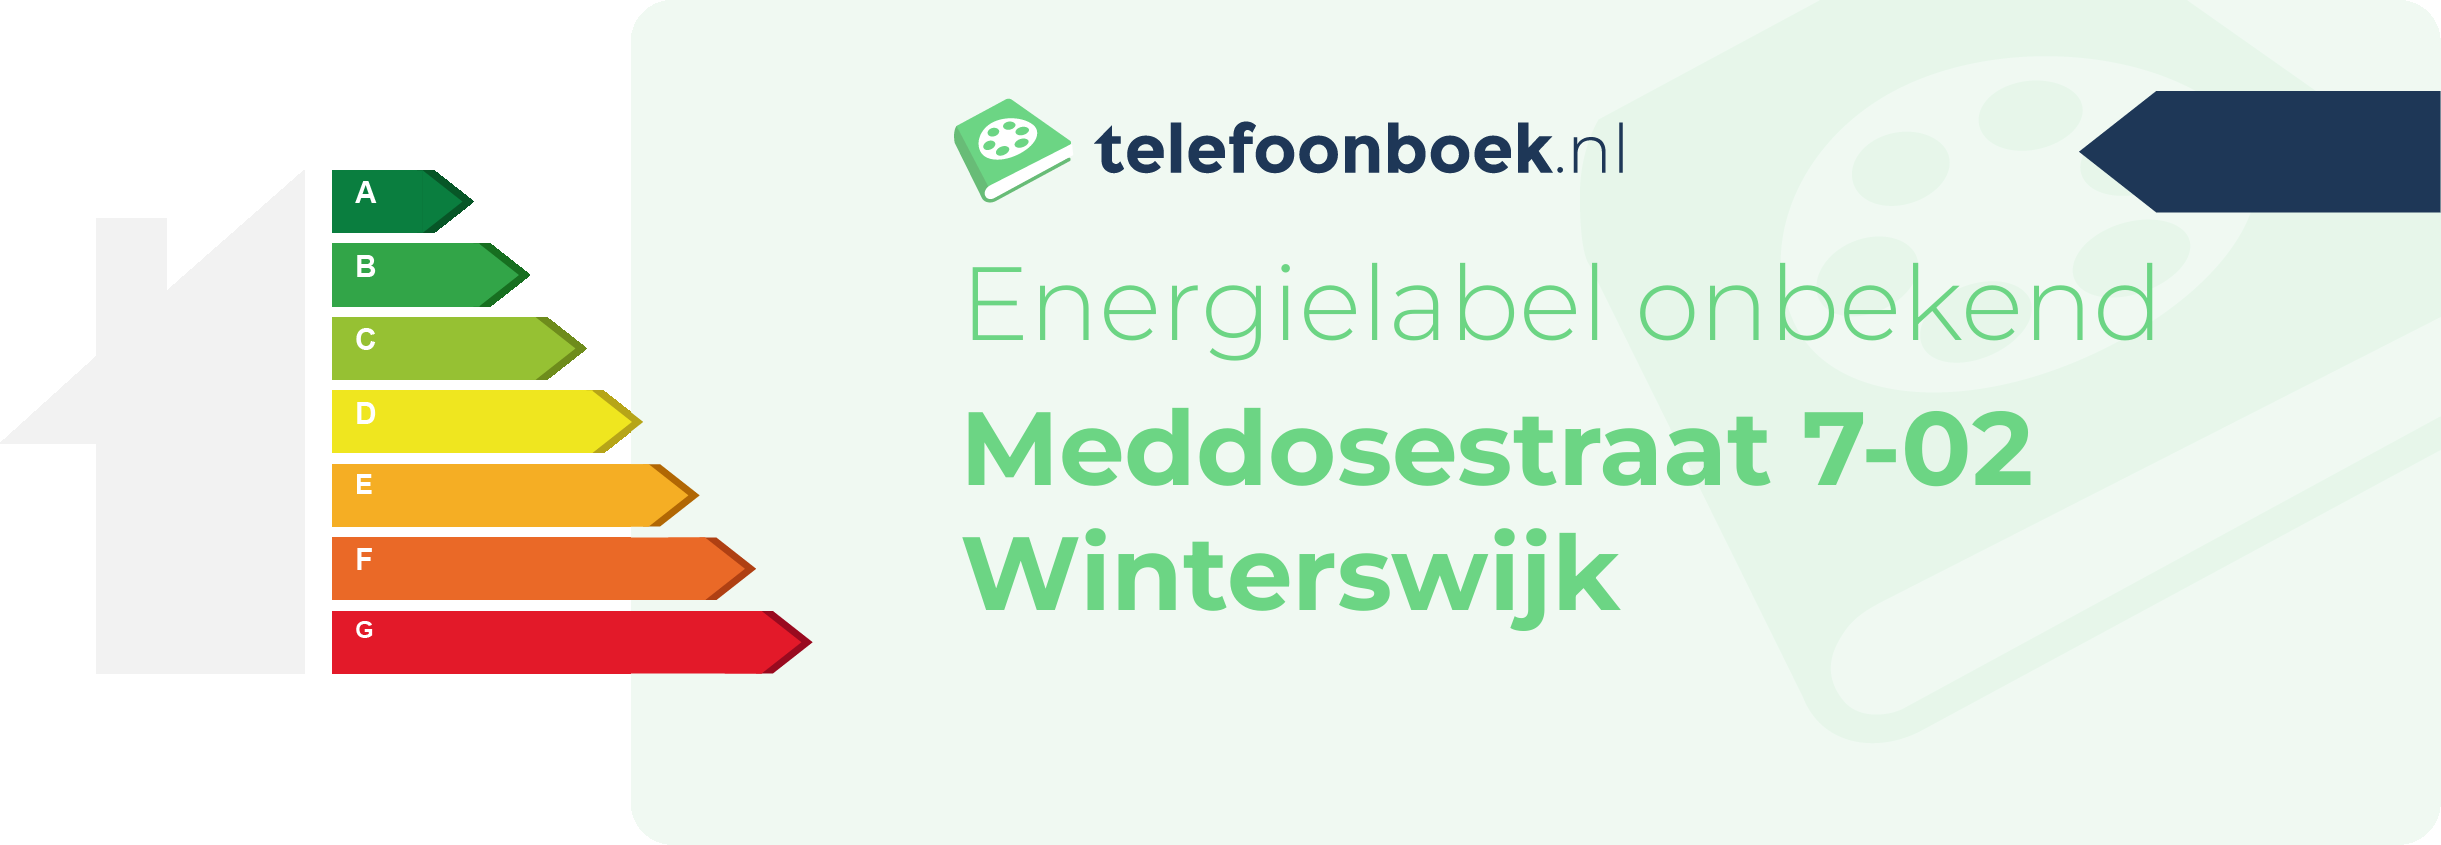 Energielabel Meddosestraat 7-02 Winterswijk